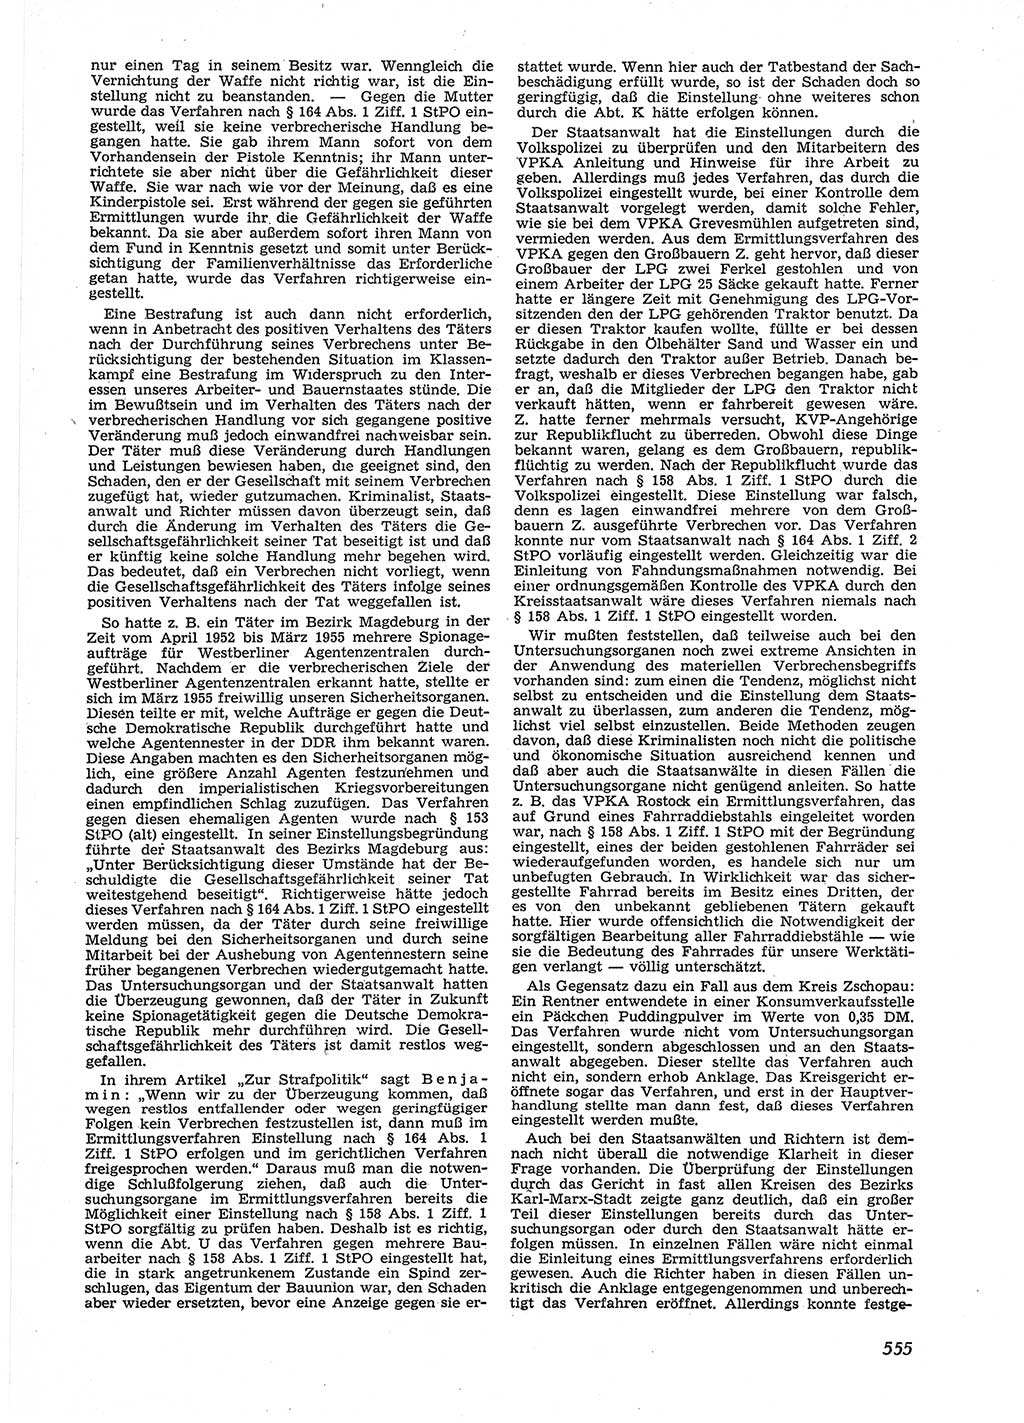 Neue Justiz (NJ), Zeitschrift für Recht und Rechtswissenschaft [Deutsche Demokratische Republik (DDR)], 9. Jahrgang 1955, Seite 555 (NJ DDR 1955, S. 555)